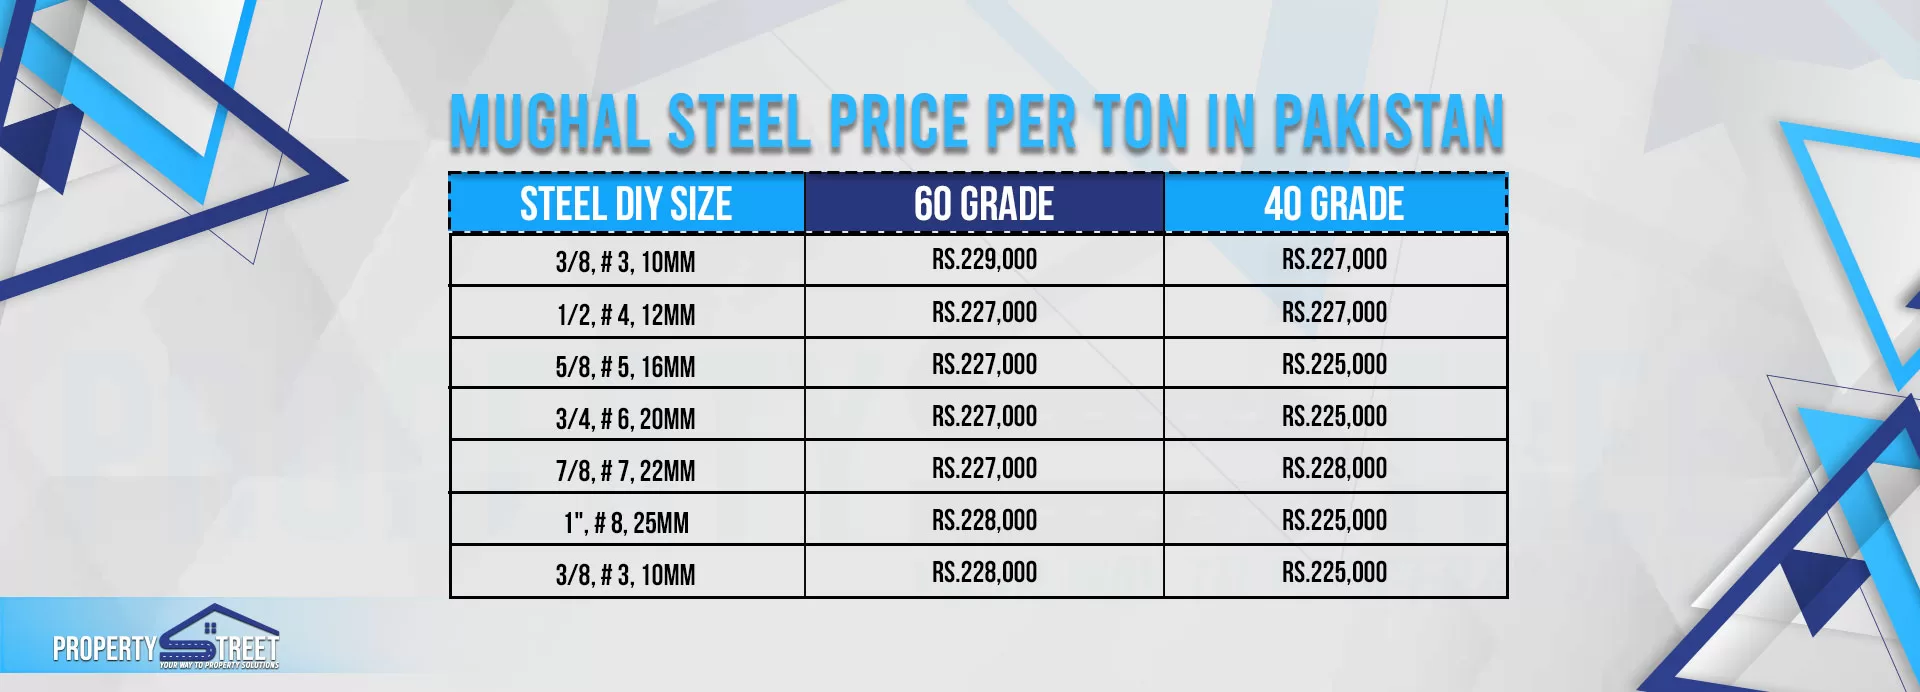 mughal steel price per ton today in pakistan